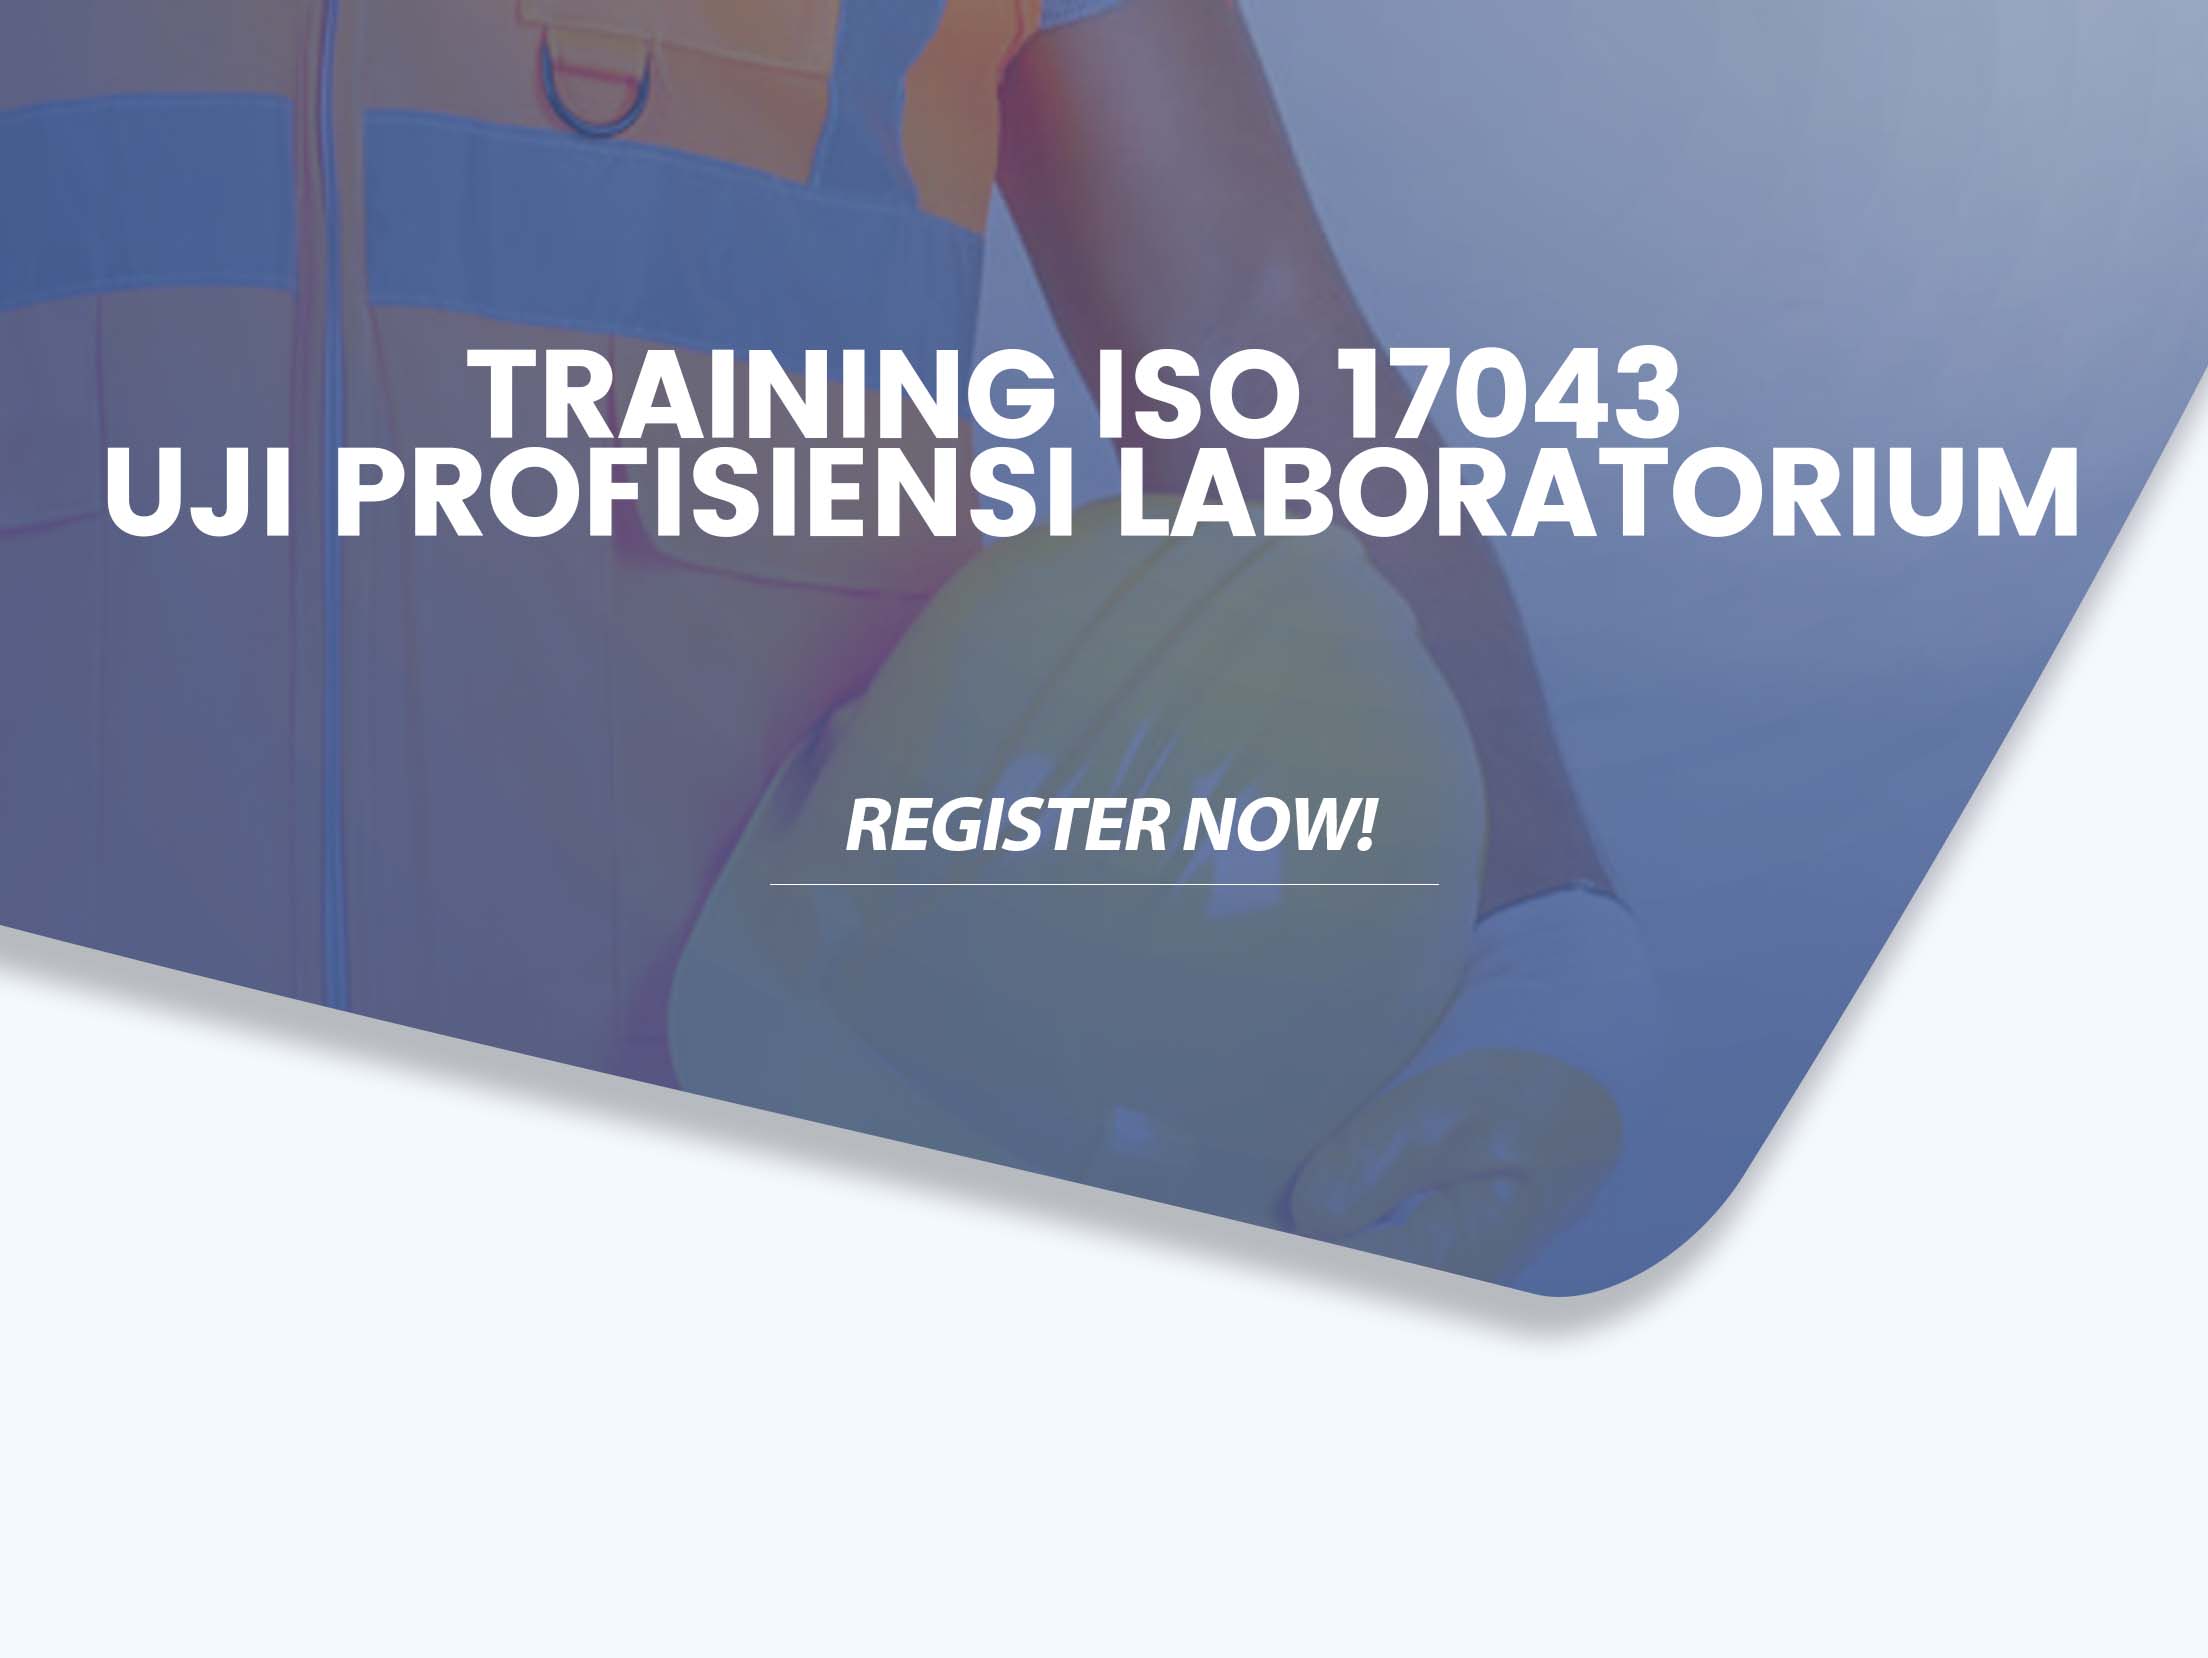 Training ISO 17043 Uji Profisiensi Laboratorium